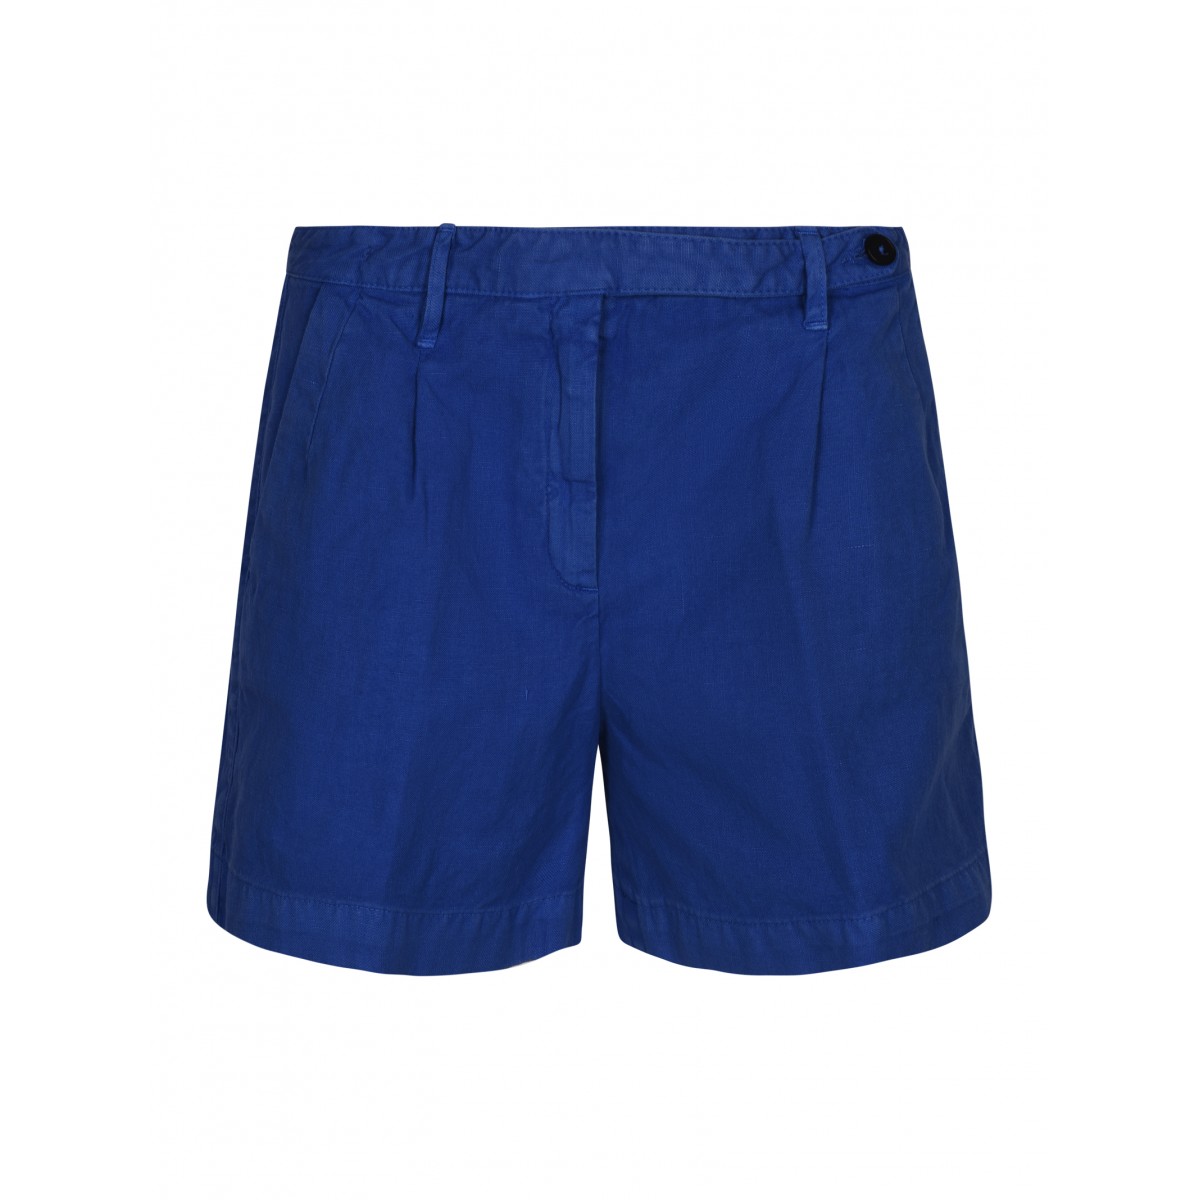 Lapis Blue Linen and Cotton Shorts